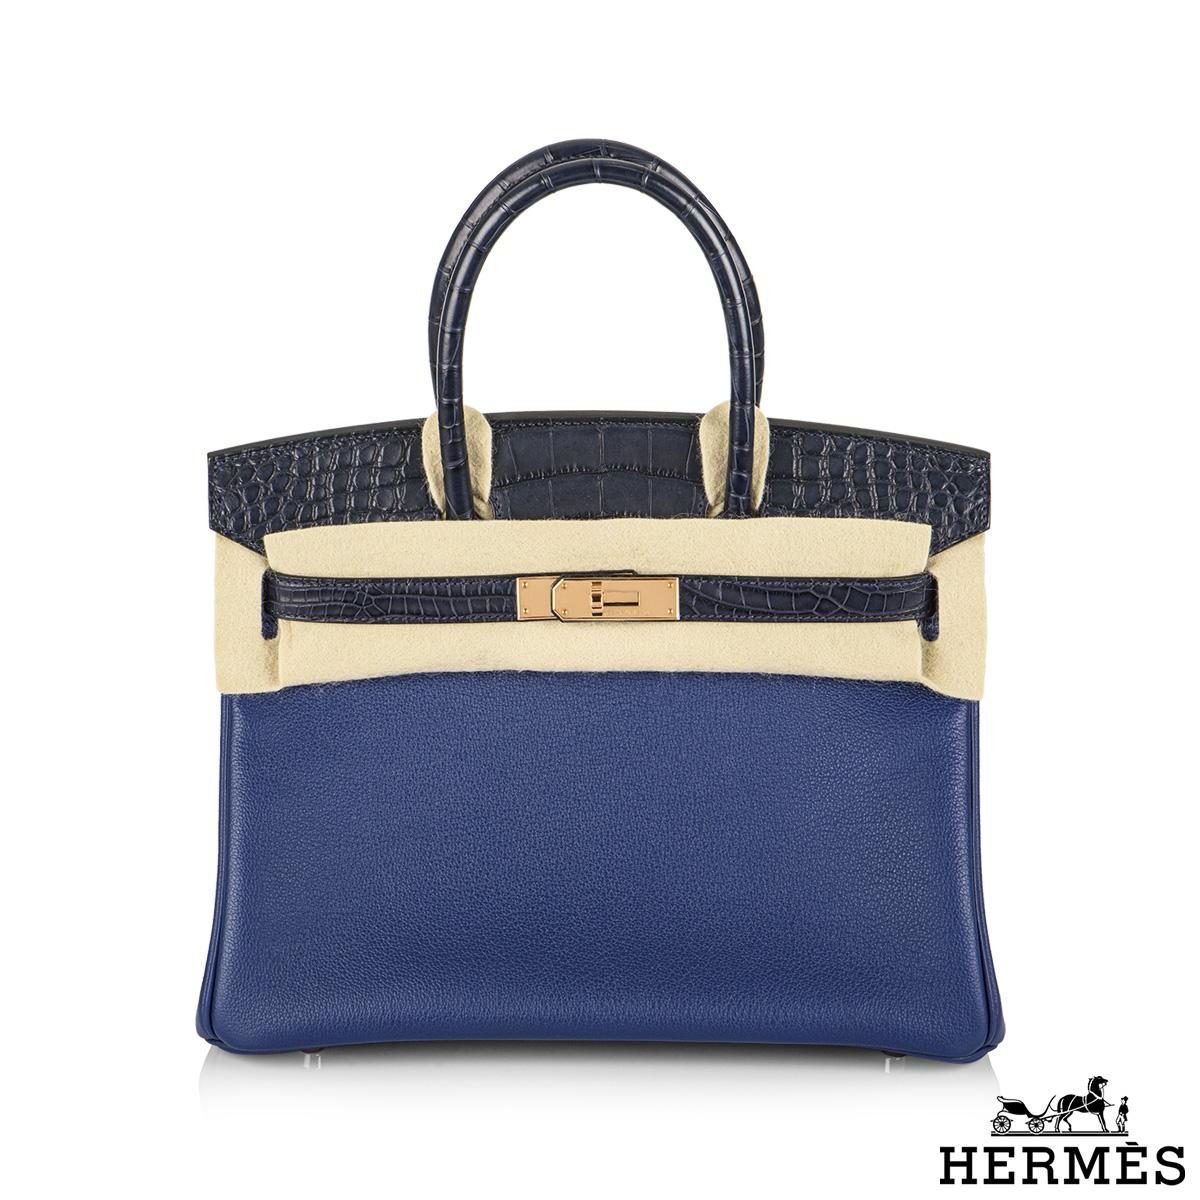 An unworn limited edition Hermès Touch Birkin 30 cm bag. The exterior of this Birkin 